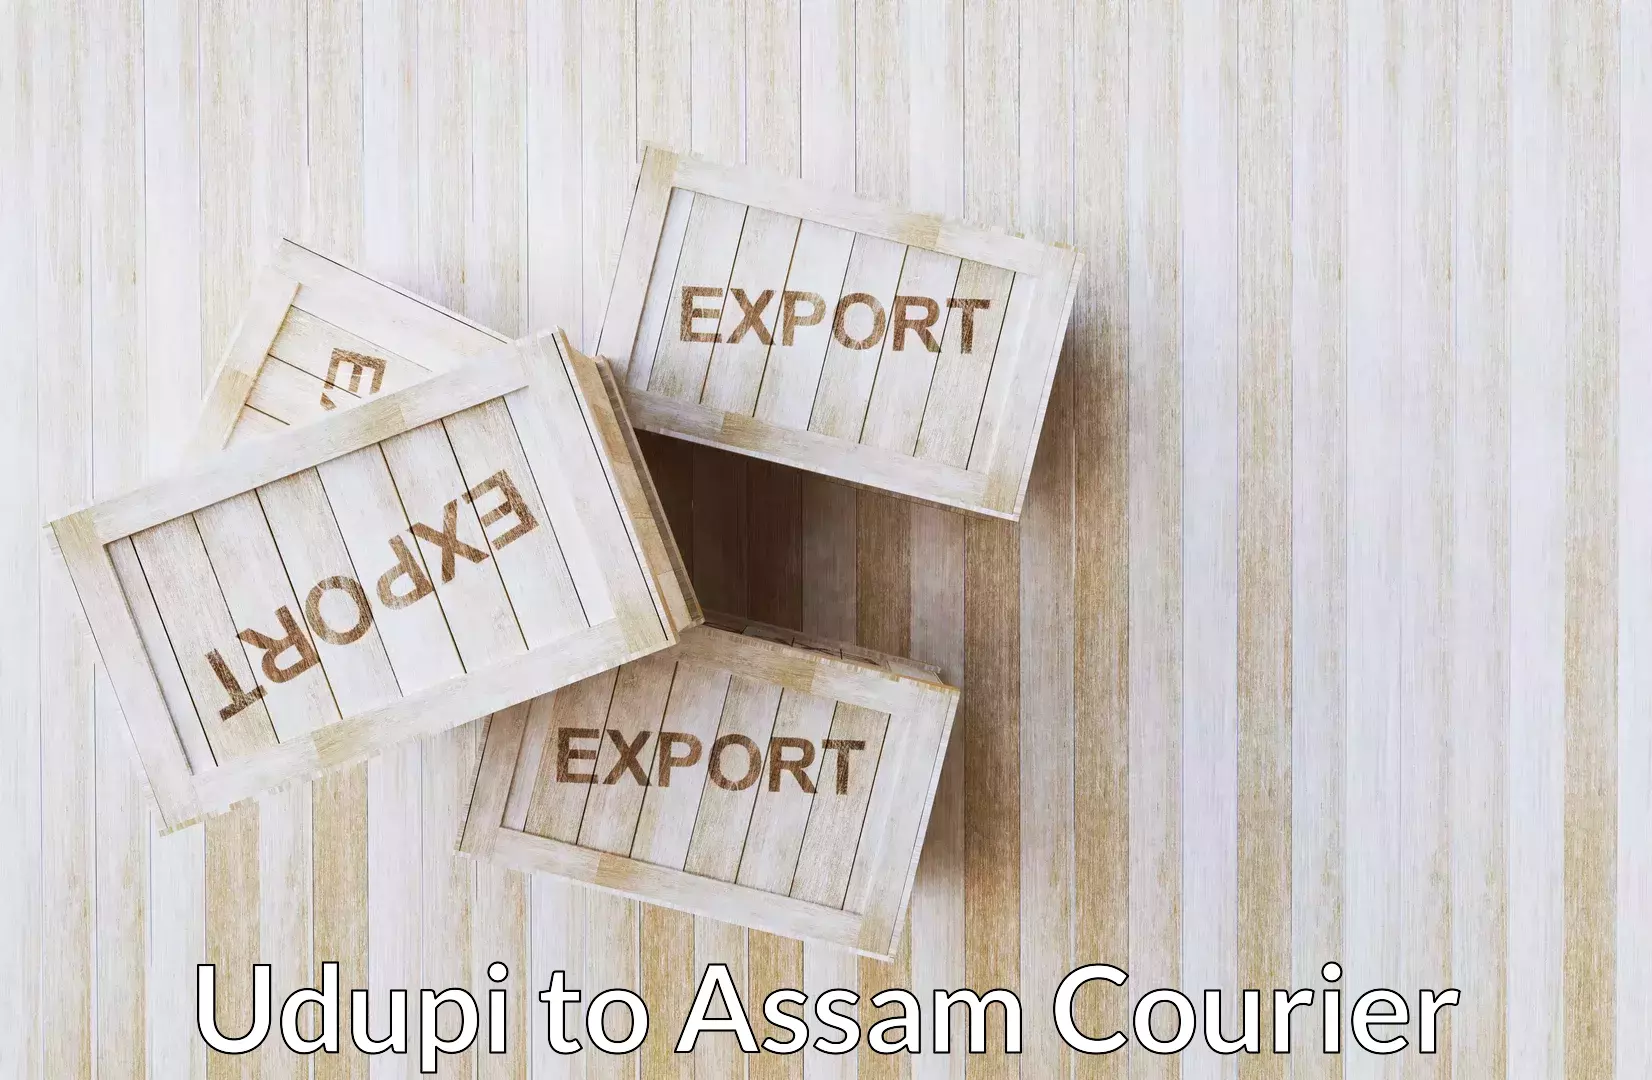 Luggage shipping service Udupi to Assam